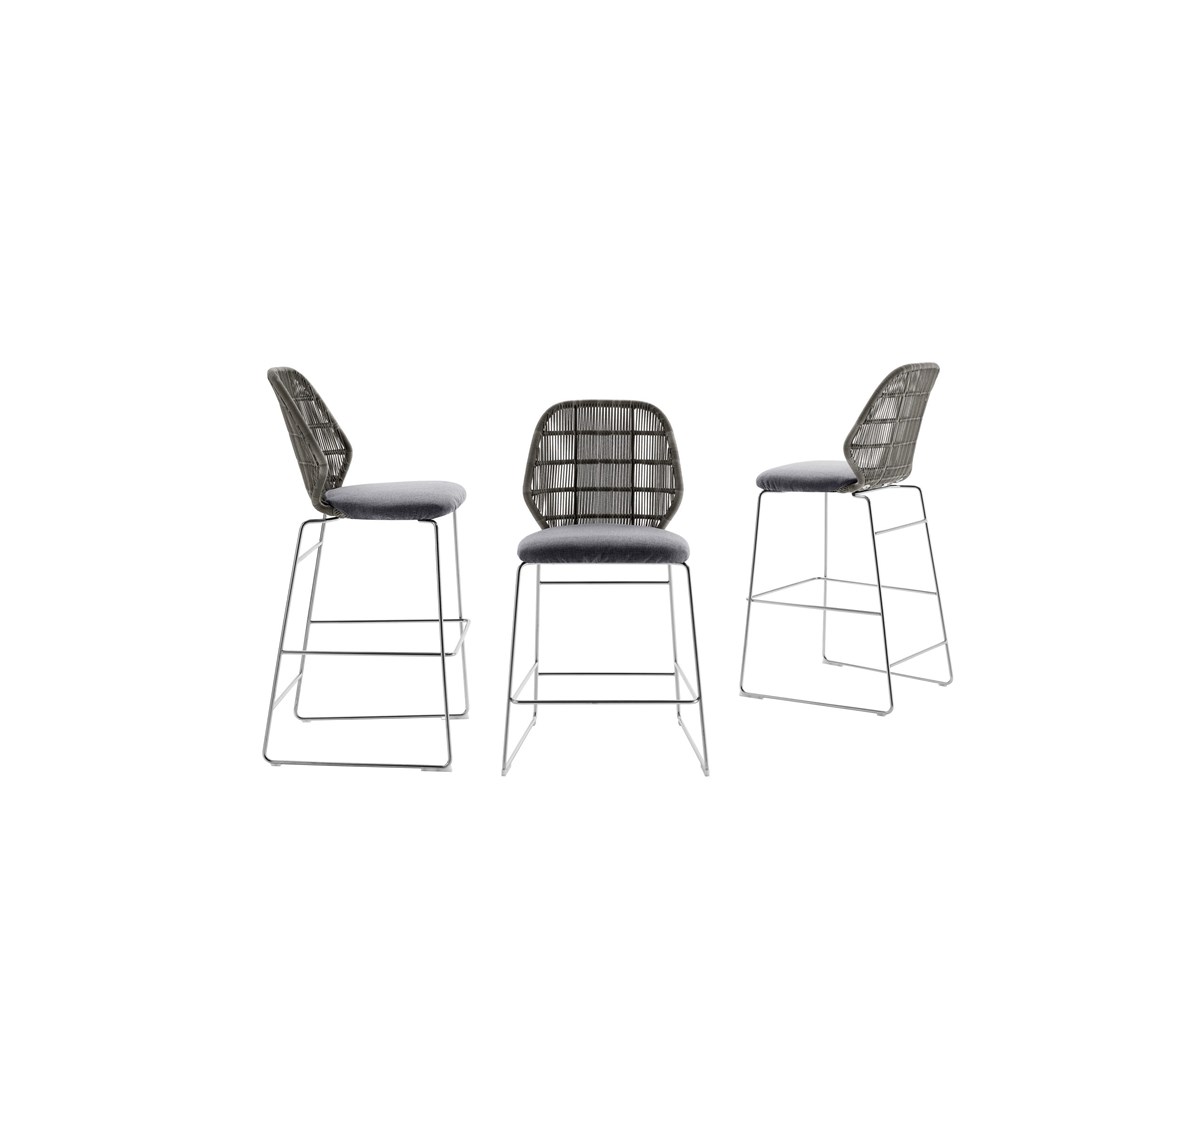 Thisslider 3 106 Outdoor Chair Crinoline 04 1